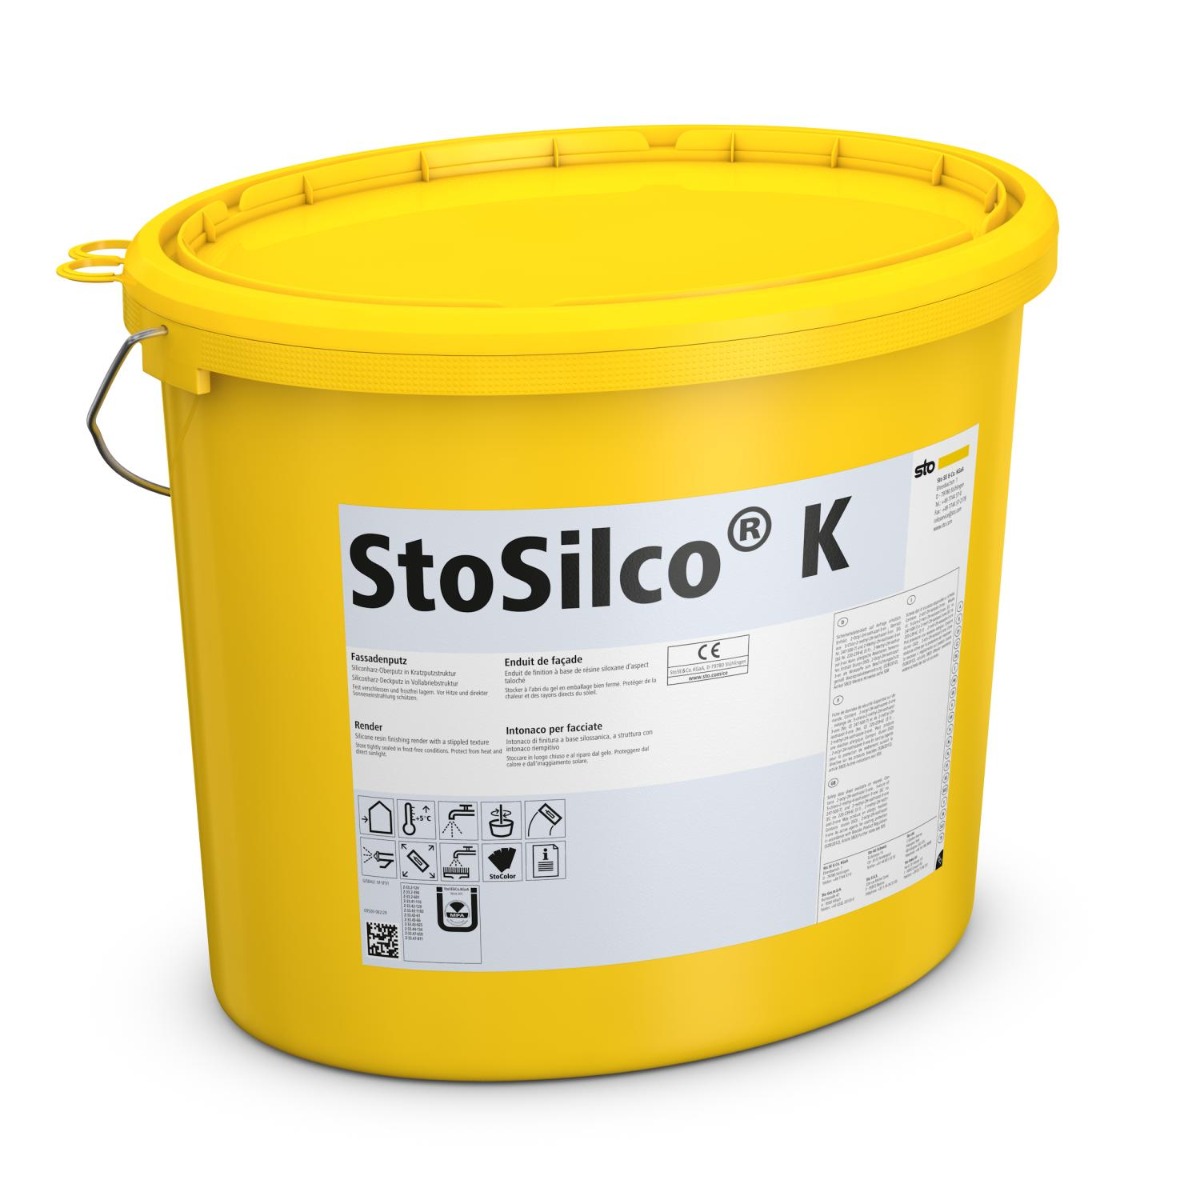 StoSilco K -25 kg Korn 1,5-Farbtonklasse I